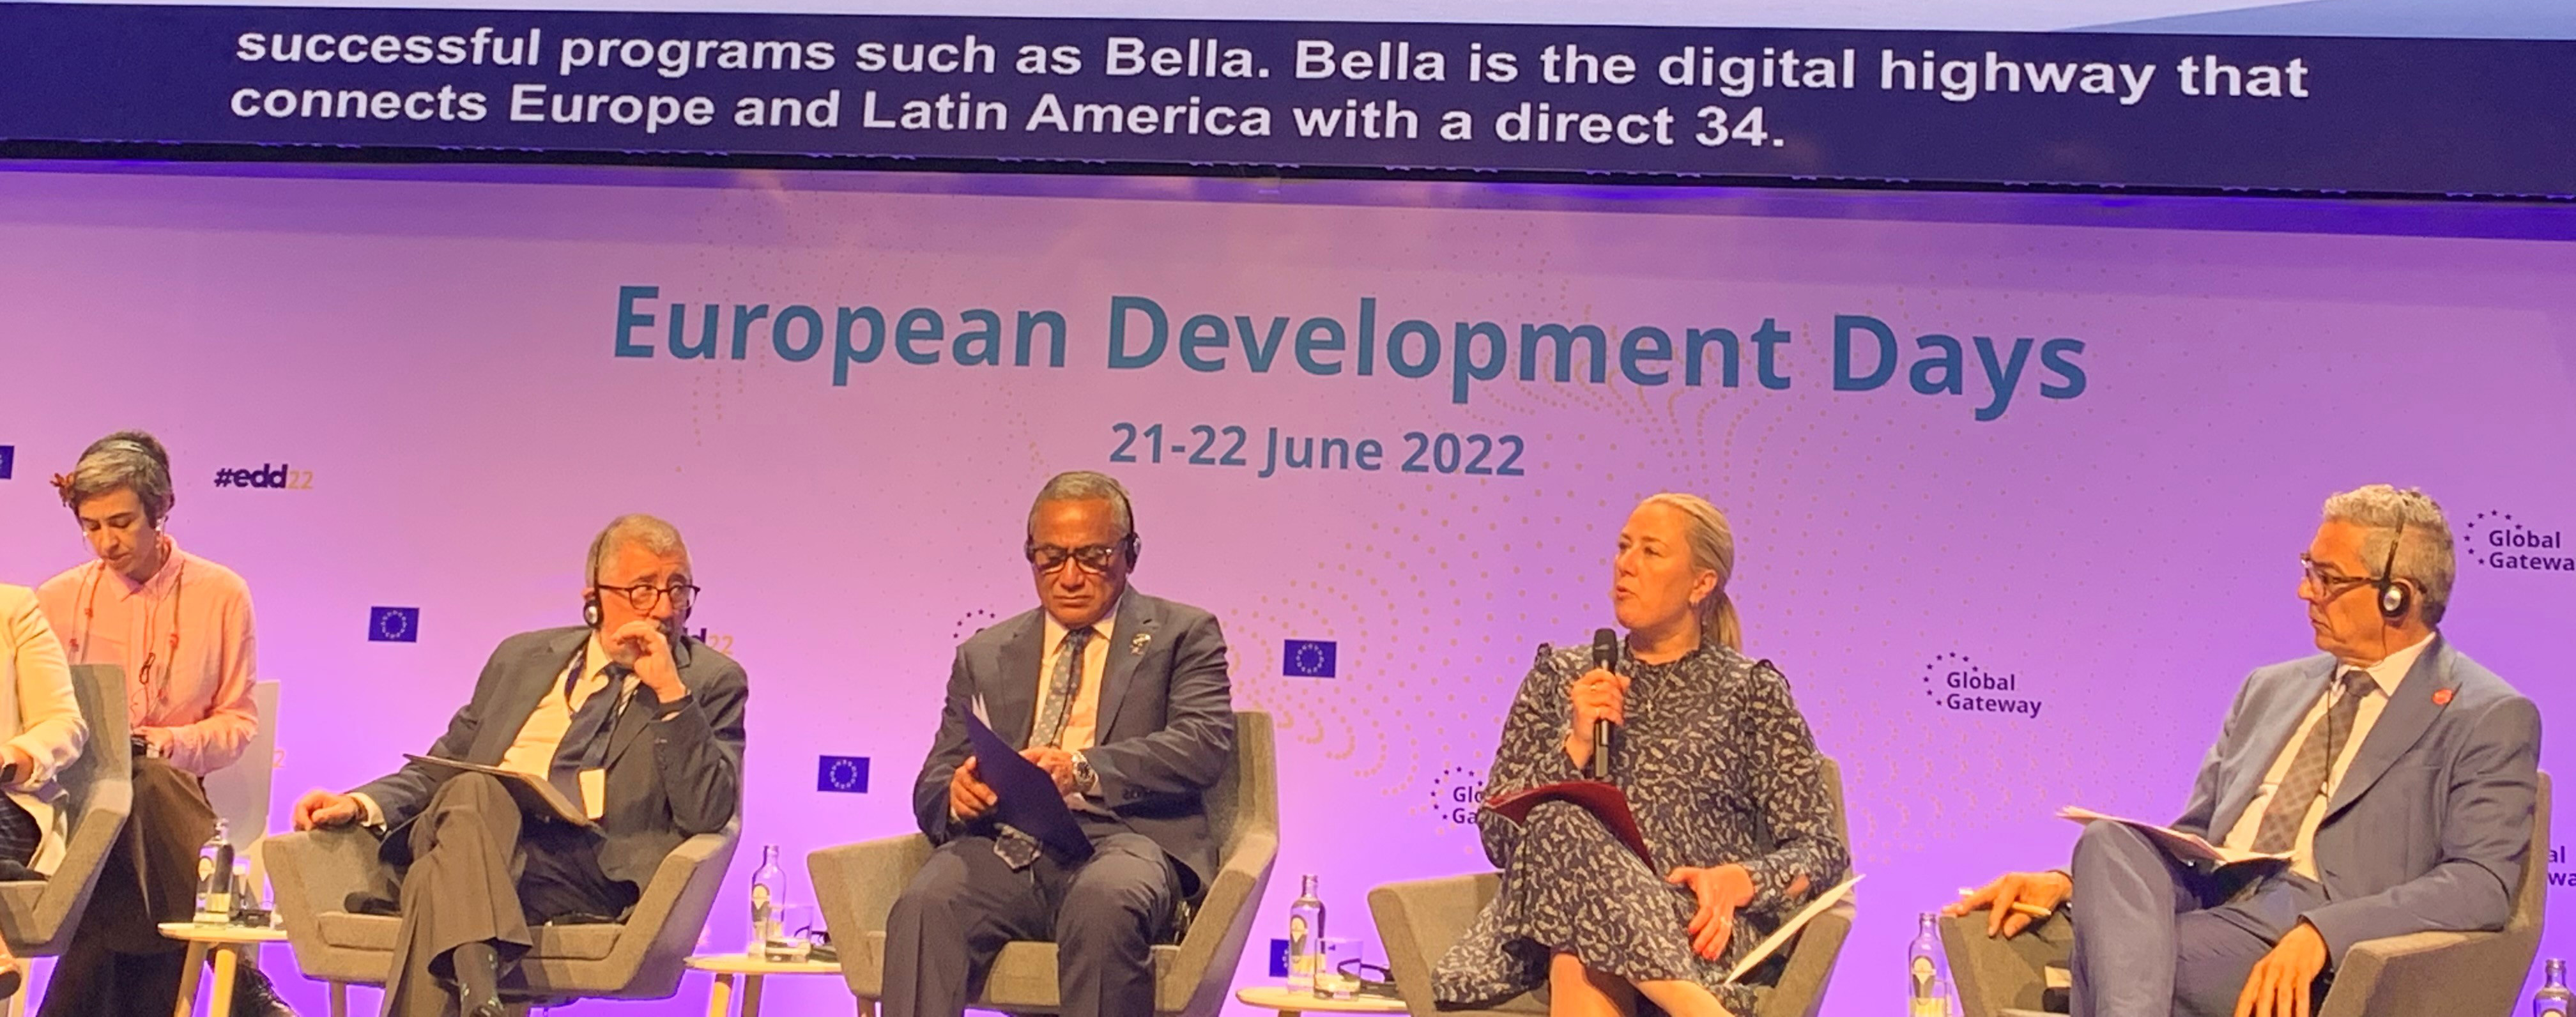 Jutta Urpilainen, Comissária da UE para Parcerias Internacionais: “BELLA é a rodovia digital que conecta Europa e América Latina”